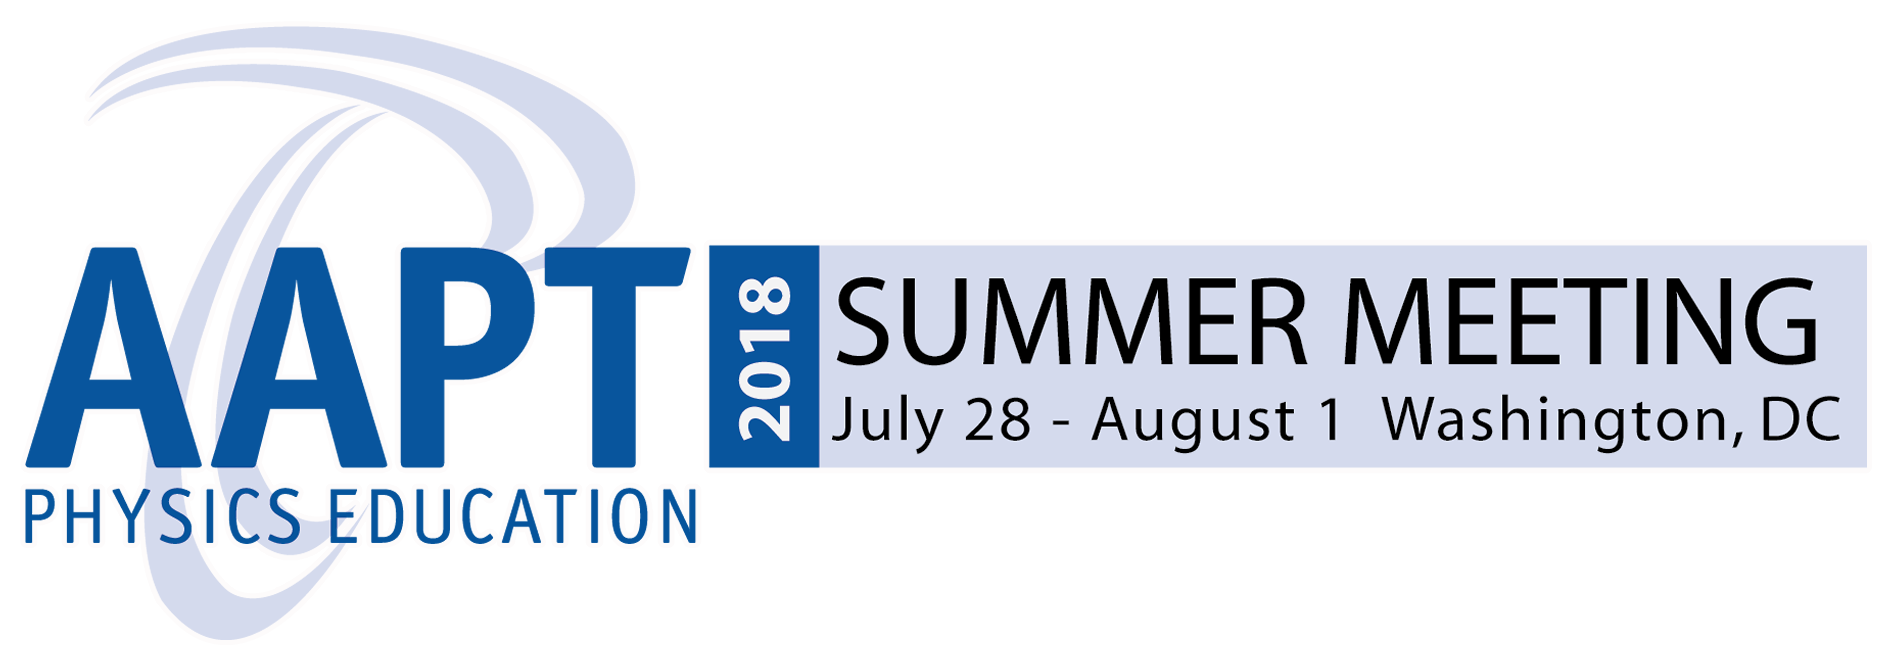 AAPT Summer Meeting 2018 in Washington, DC